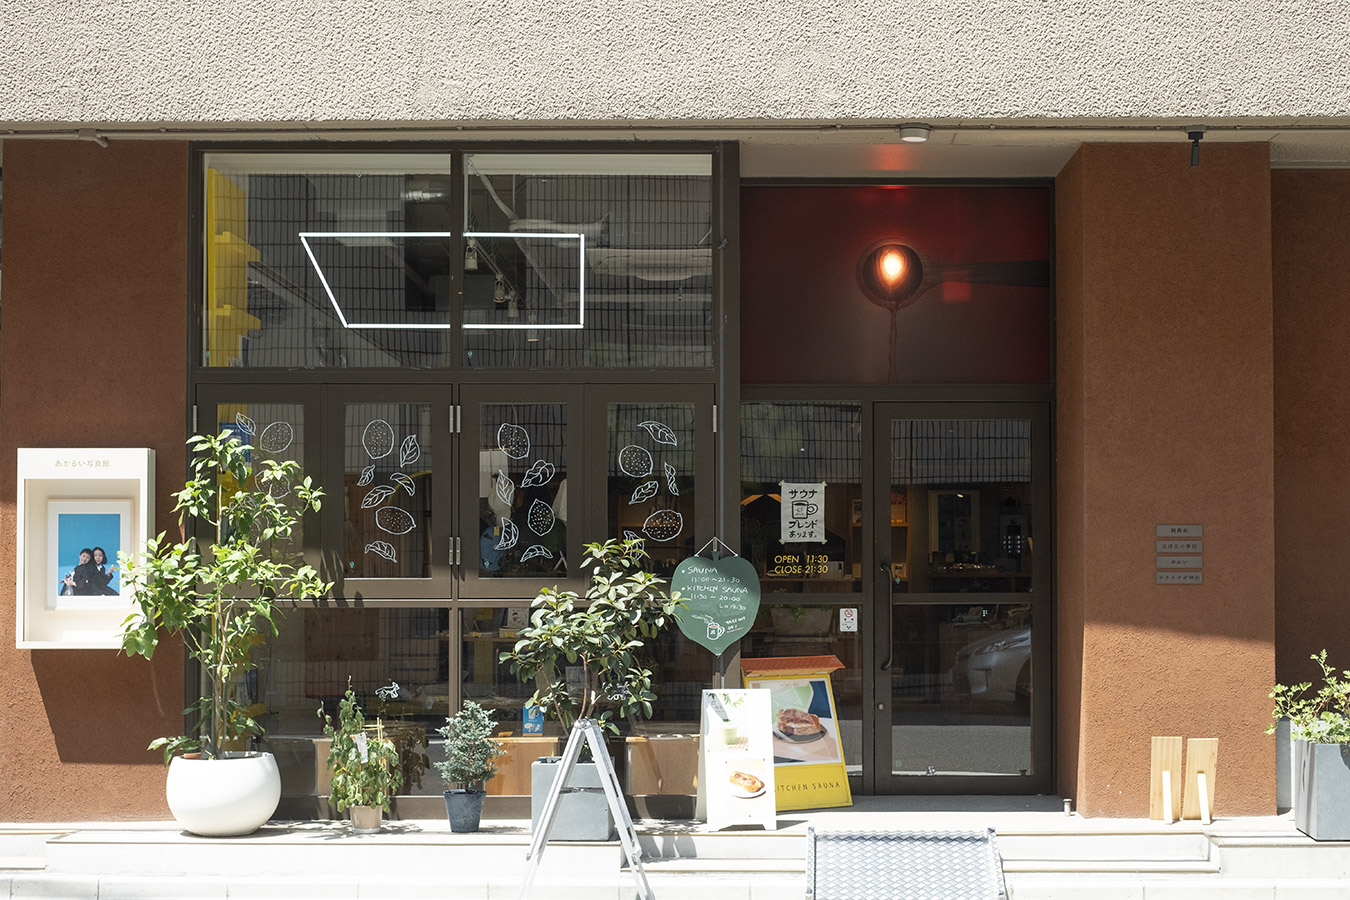 今回、星野さんの取材で訪ねた「神田ポートビル」（東京・神保町）は、ギャラリー、ショップ、サウナなどを併設した複合施設。サウナ好きの星野さんはここでサウナ×対話のワークショップ「メンタルヘルススーパー銭湯」を開いている。